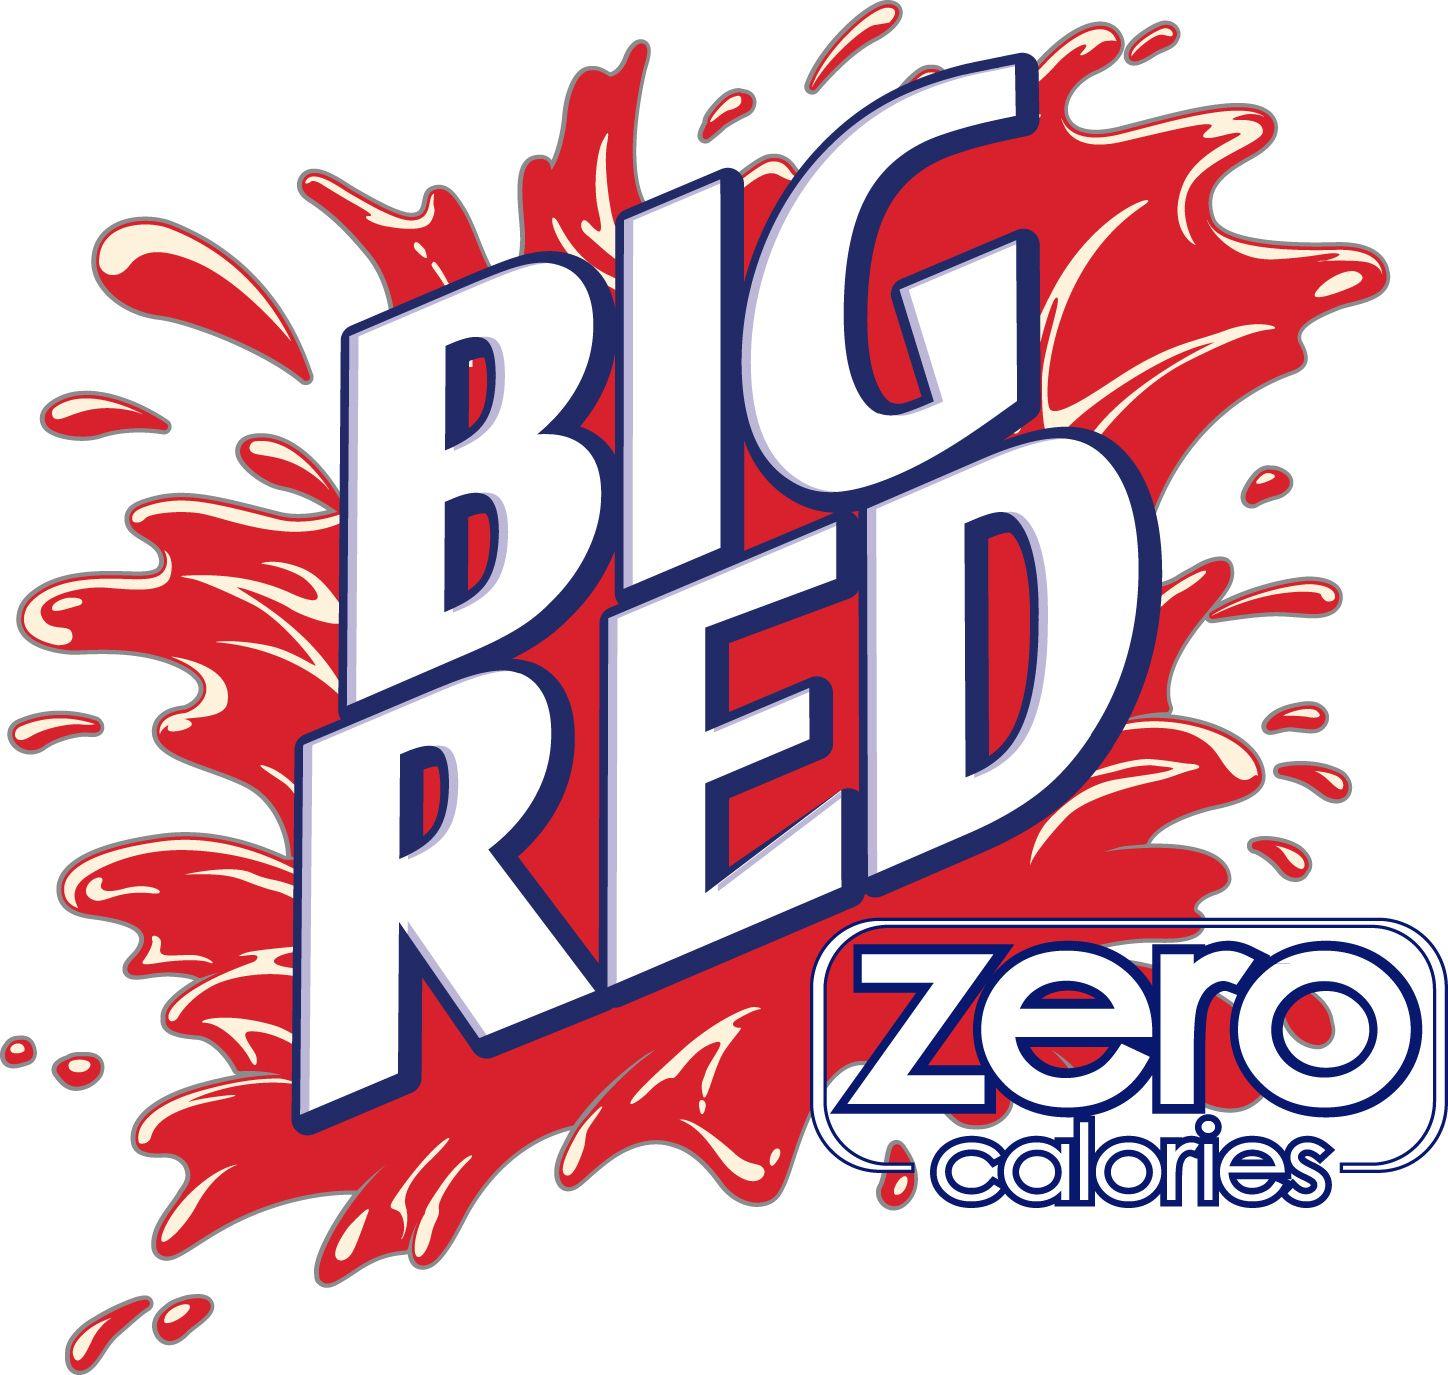 Big Red Logo - Image - Bigredzero logo.jpg | Pepsi Wiki | FANDOM powered by Wikia